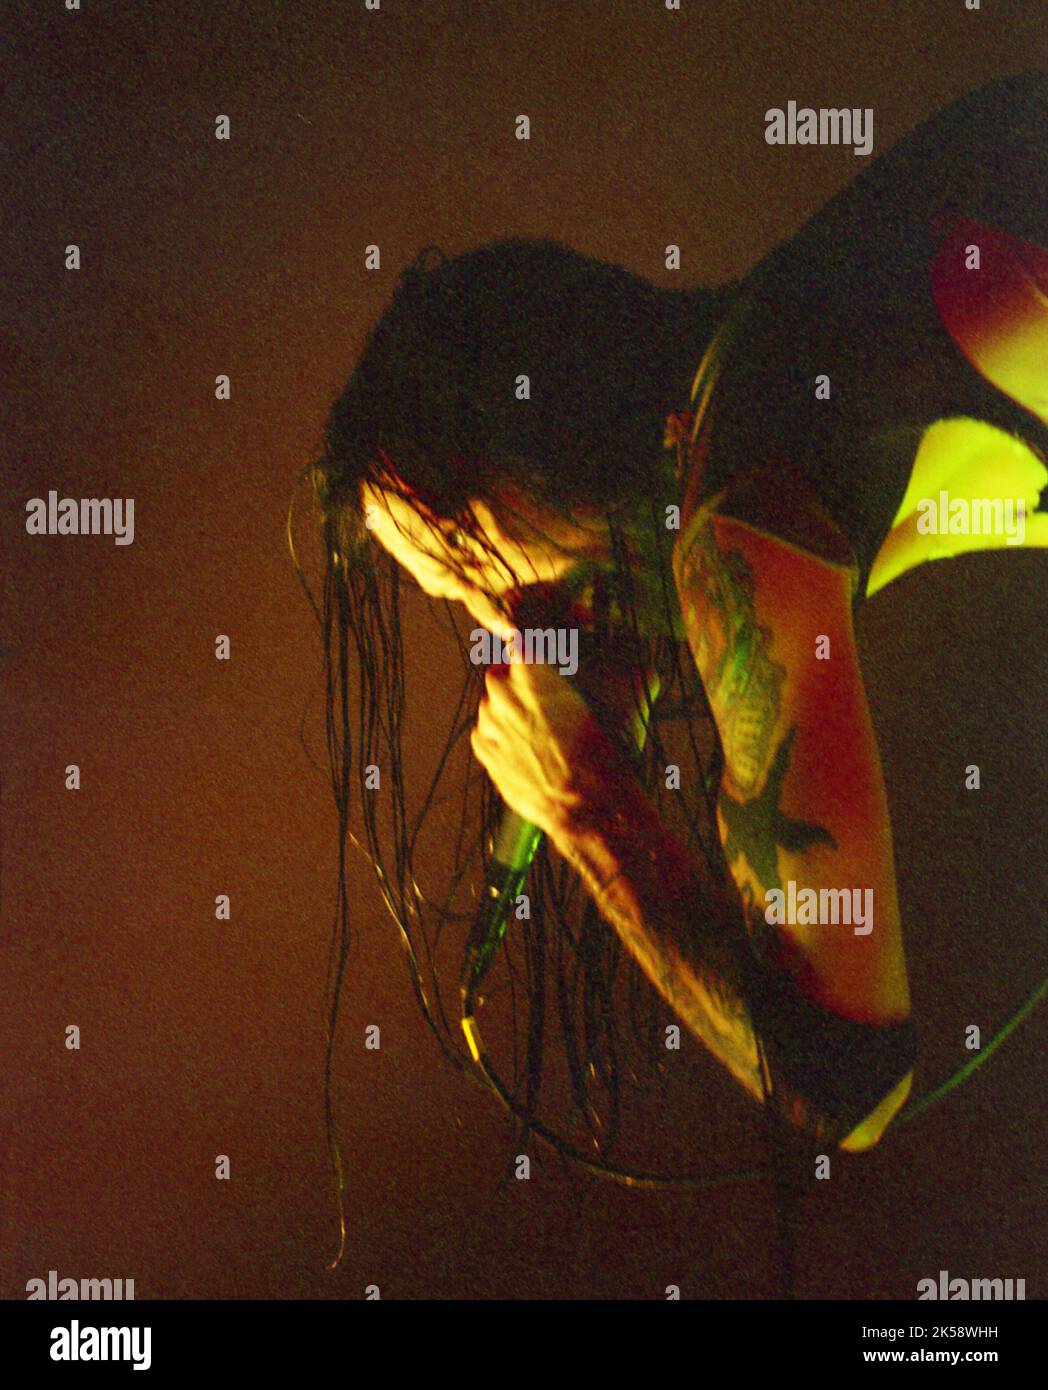 15 dicembre 1995 - Orlando, Florida, USA - MARILYN MANSON esecuzione durante il tour degli odori come i bambini-The Edge-dic. 15, 1995. (Credit Image: © Christopher Lee Helton/ZUMA Press Wire) Foto Stock